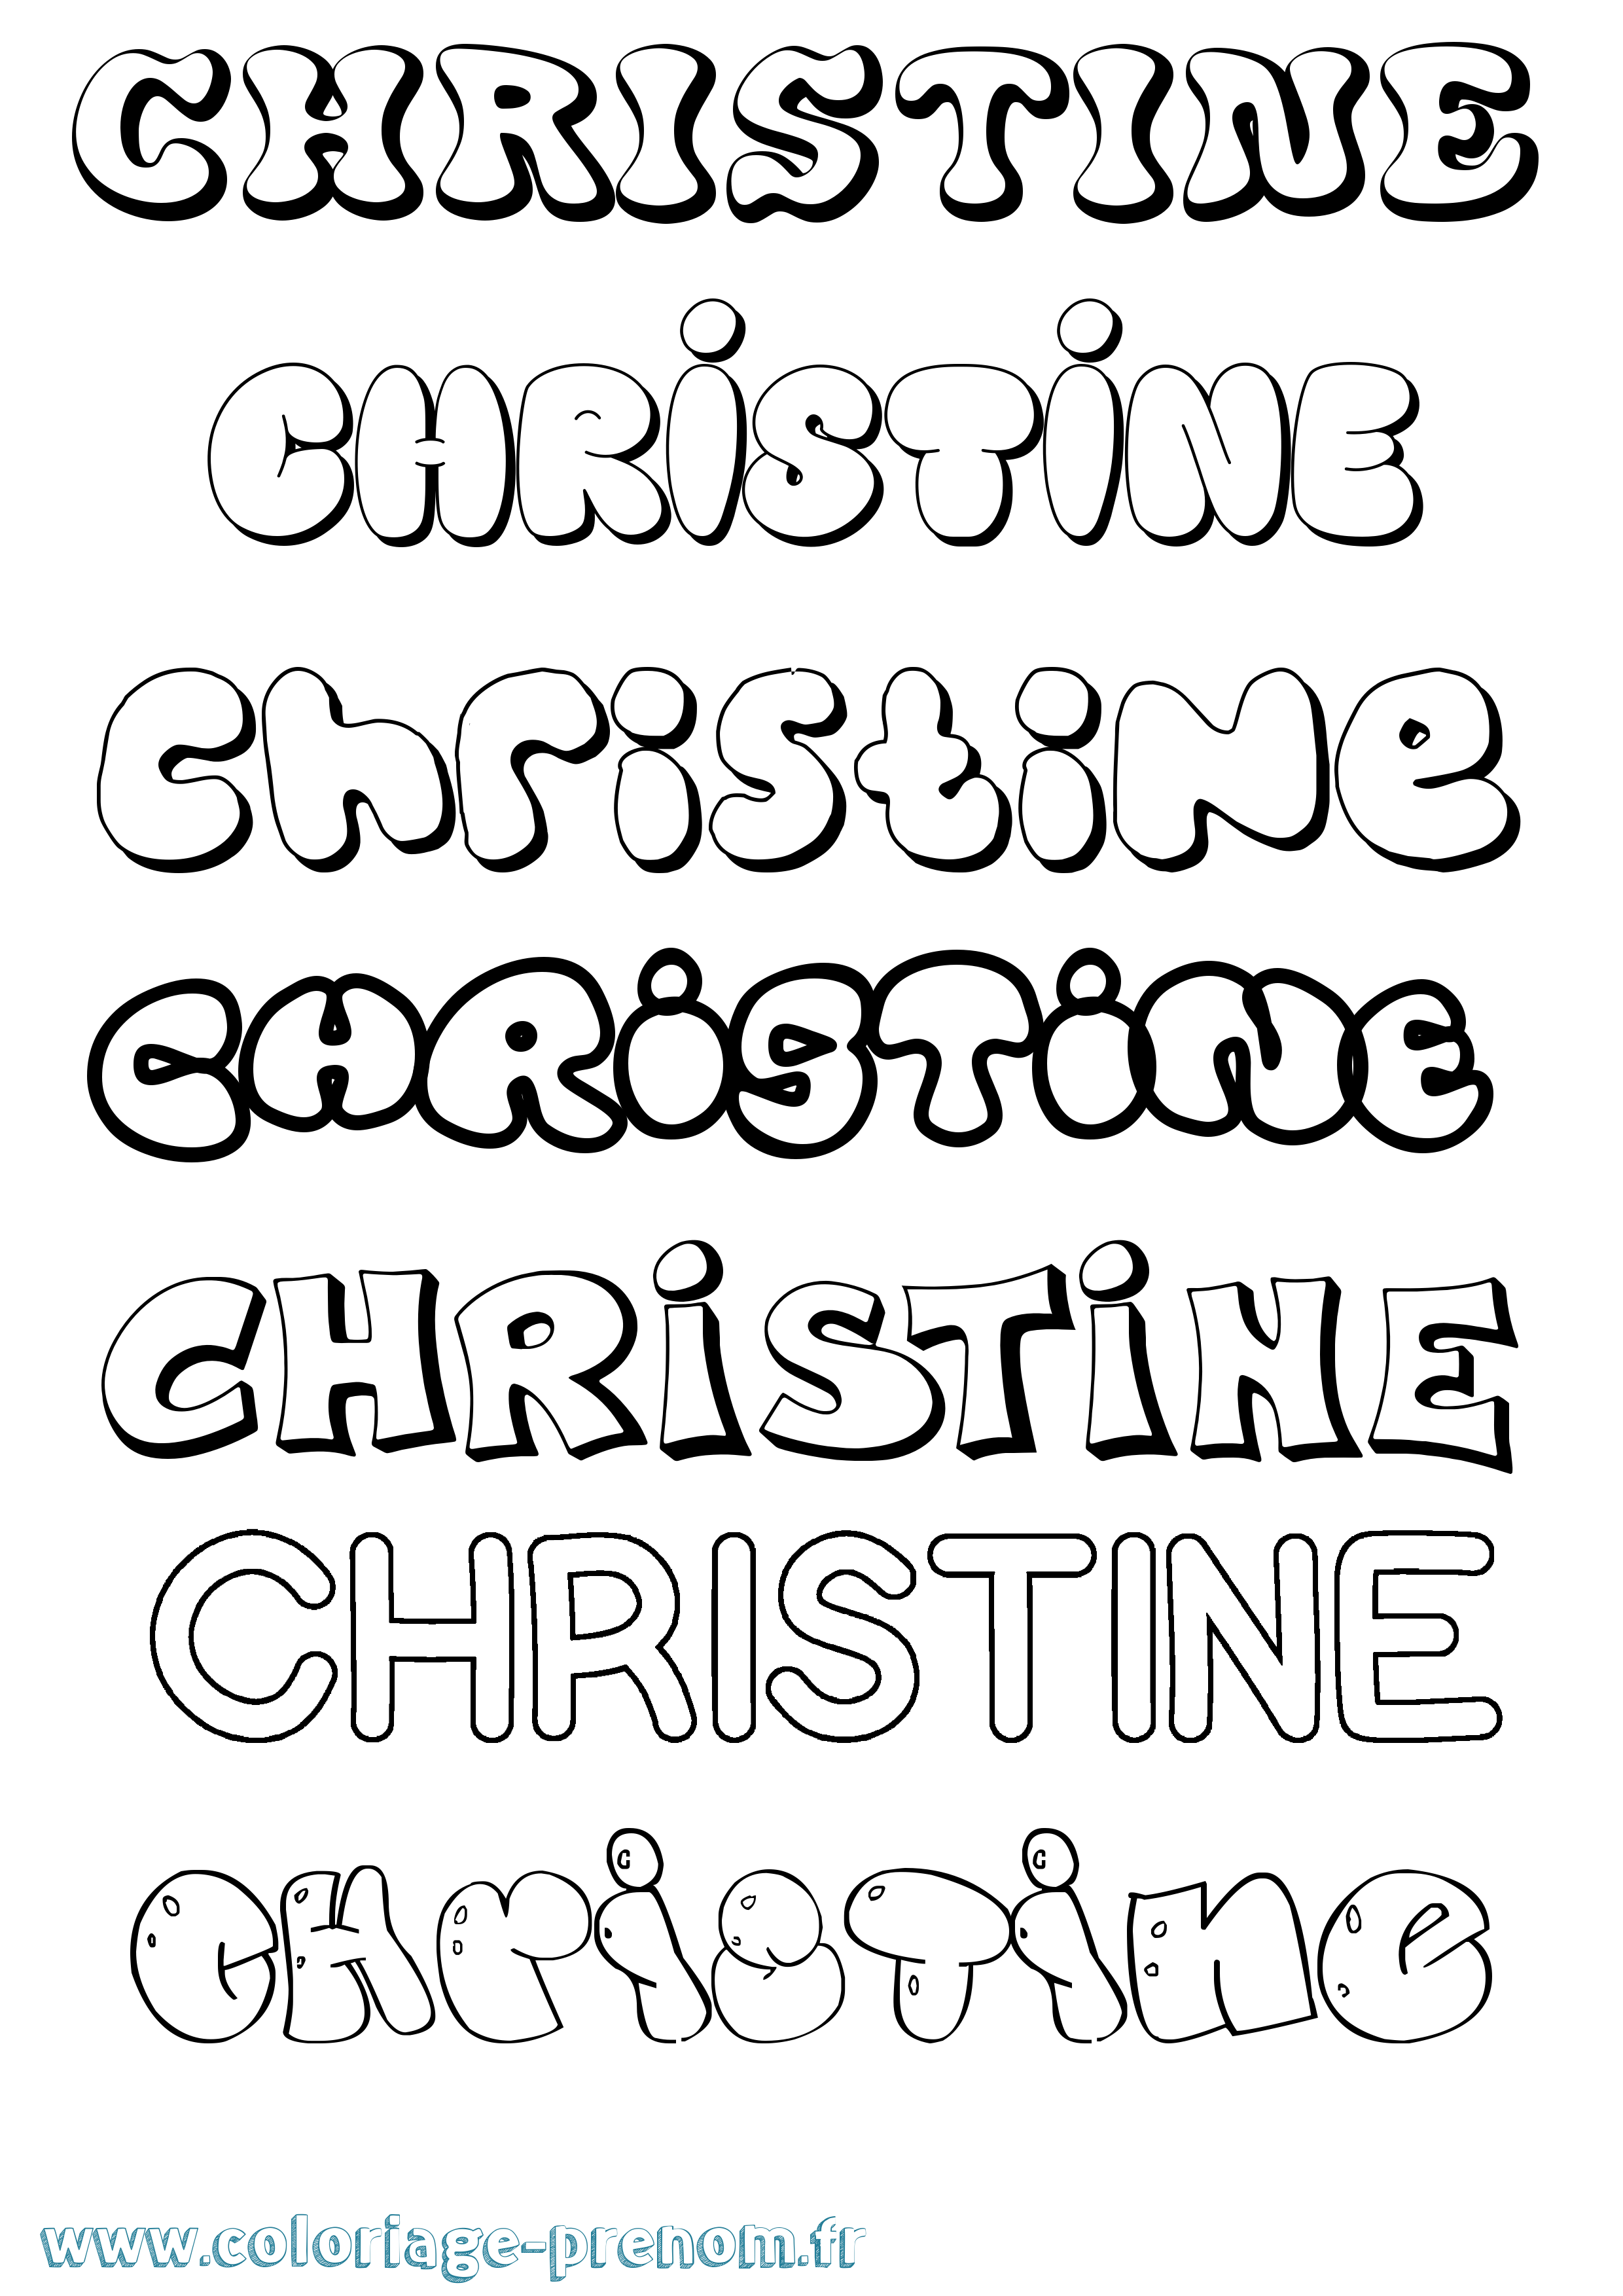 Coloriage prénom Christine Bubble